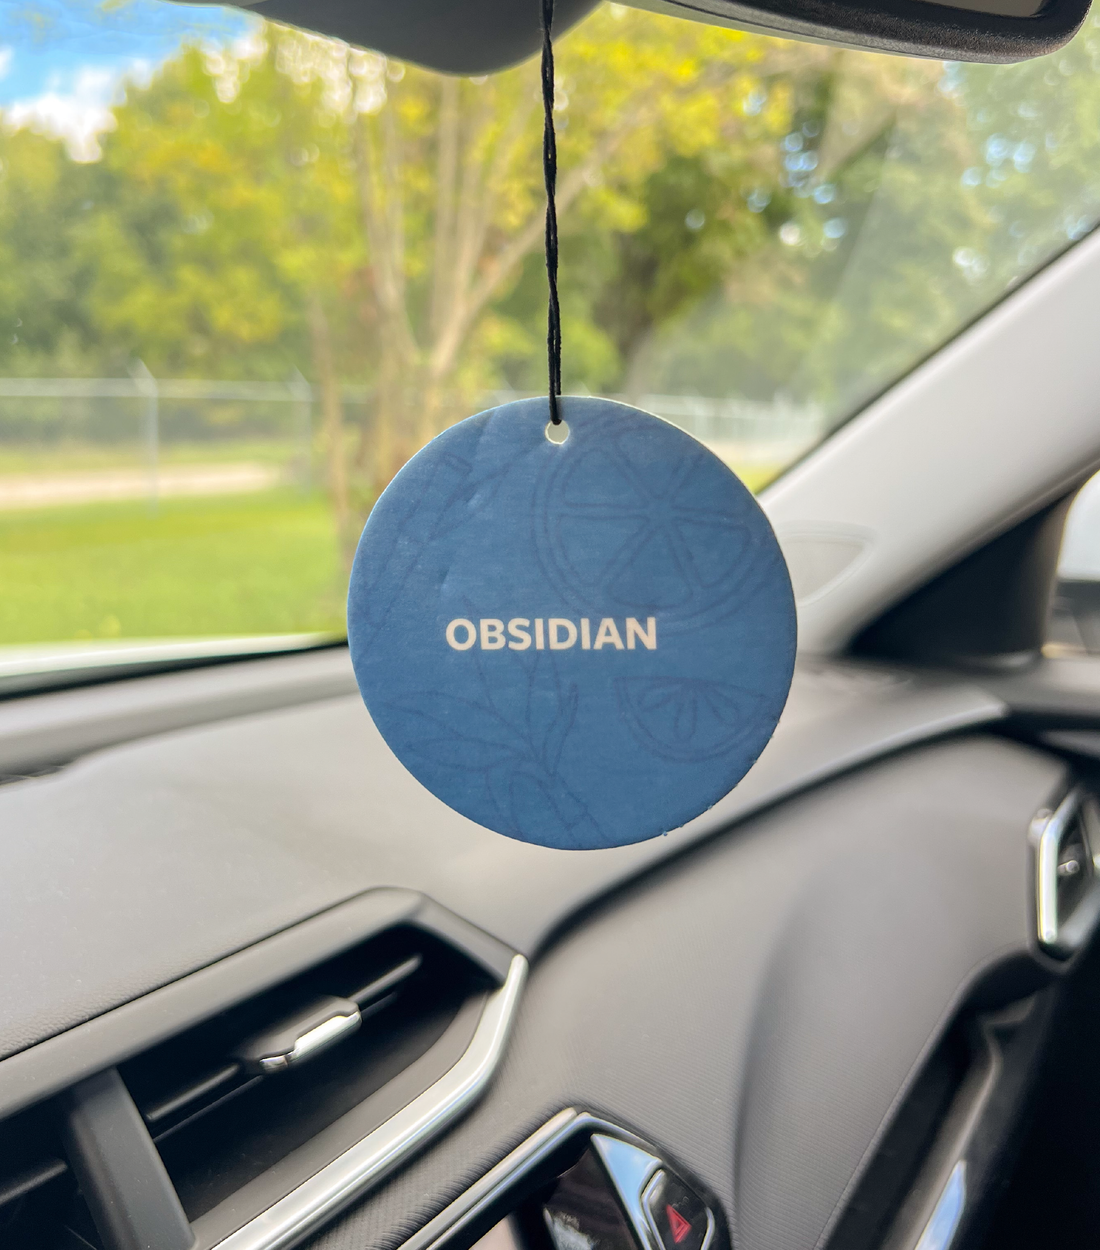 An Obsidian Car Freshener hanging in a car.